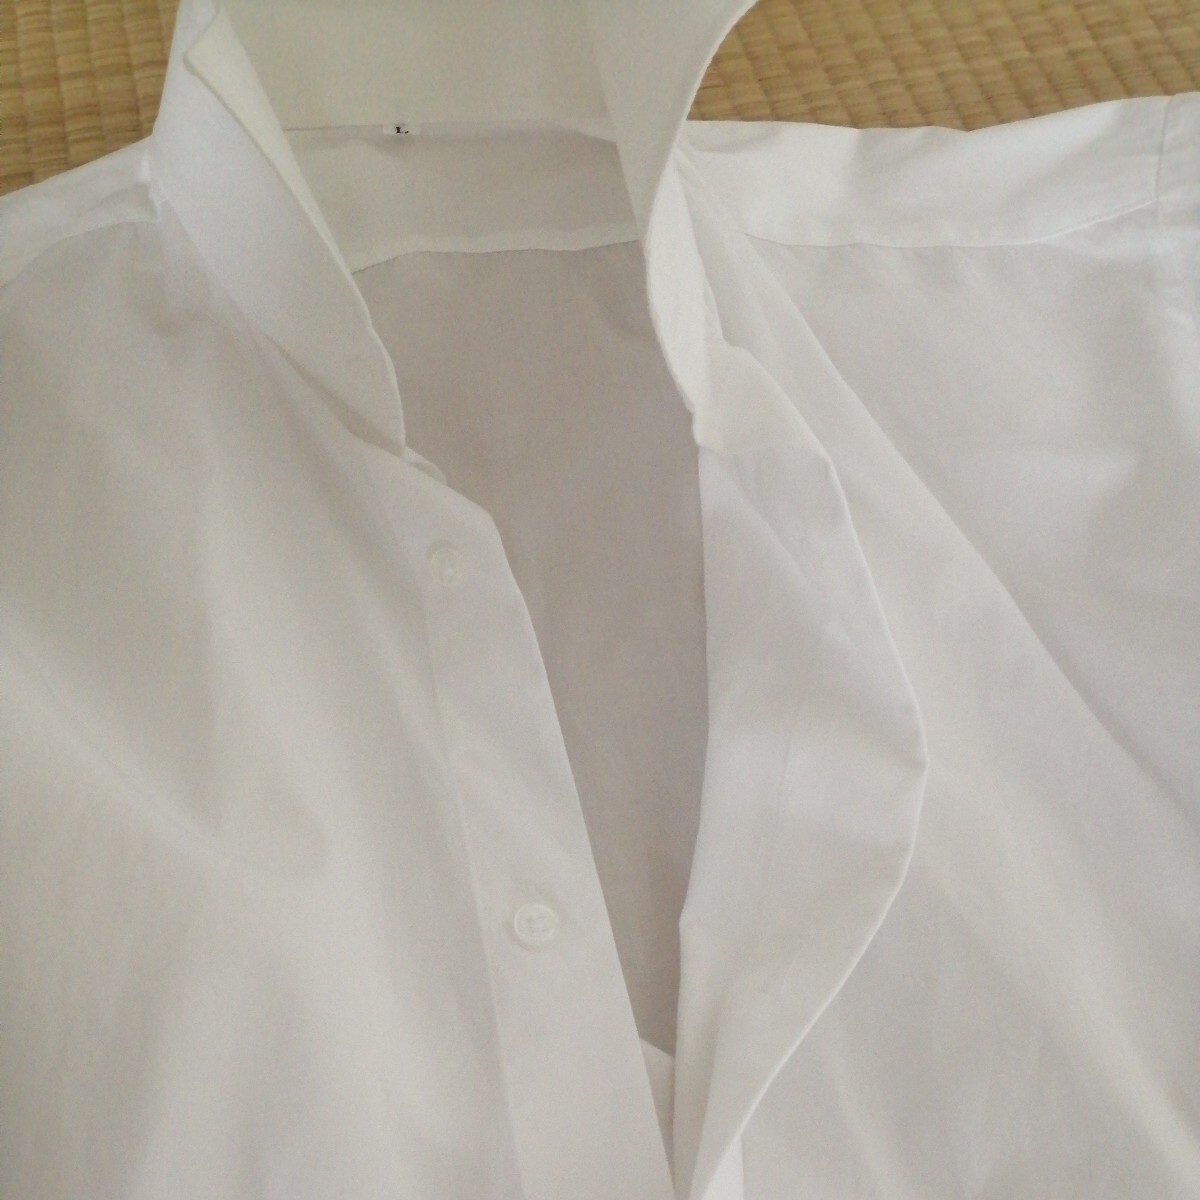  свадьба прекрасный товар комплект из трех позиций Wing цвет рубашка tabi носовой платок сделано в Японии nobare-zefkskeNOVARESE мужской формальный mo- человек g